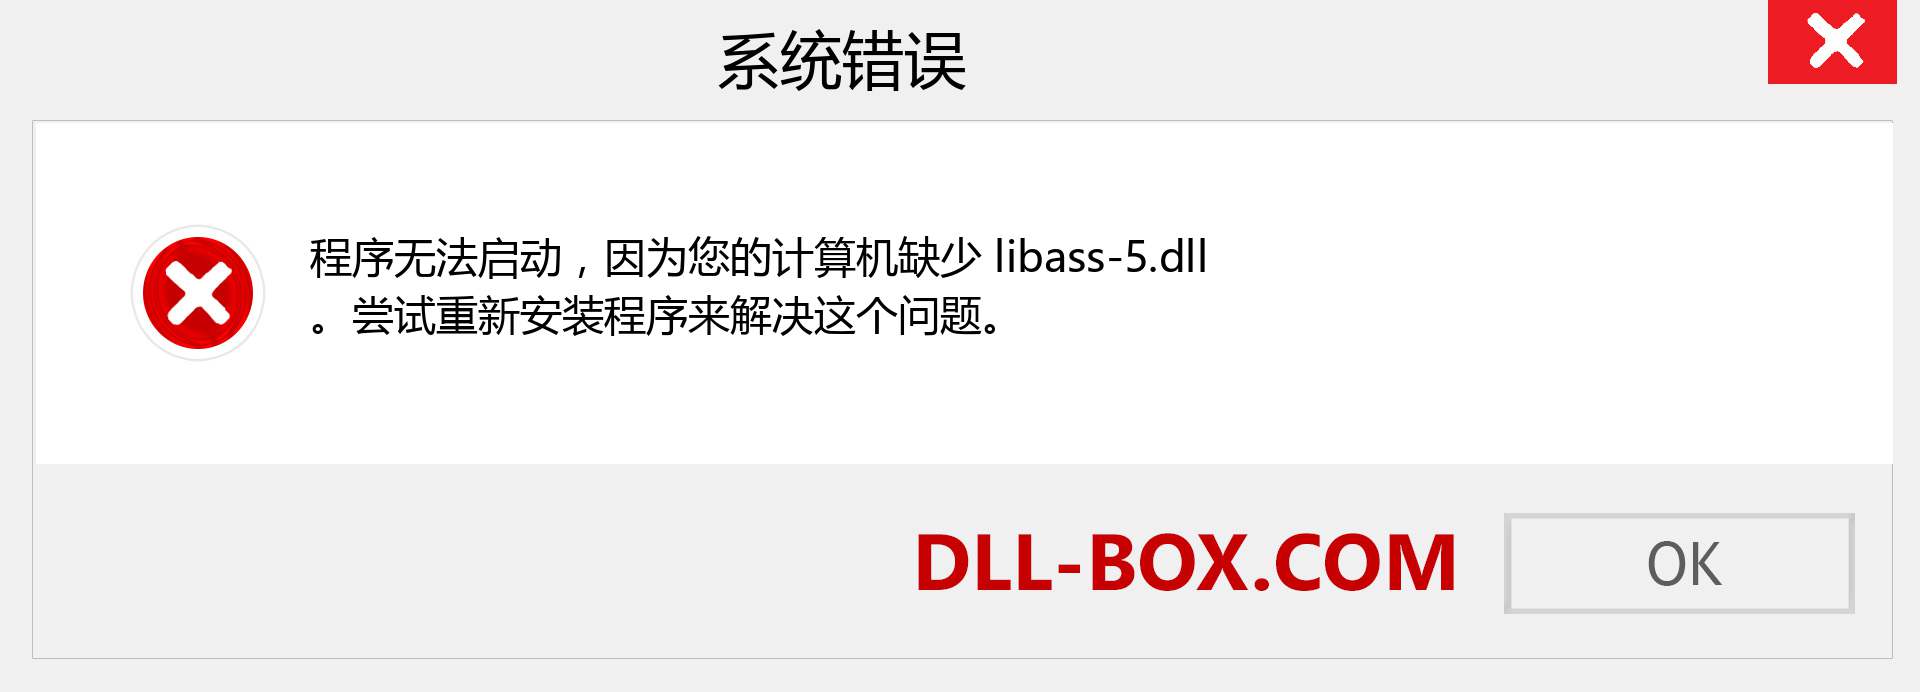 libass-5.dll 文件丢失？。 适用于 Windows 7、8、10 的下载 - 修复 Windows、照片、图像上的 libass-5 dll 丢失错误